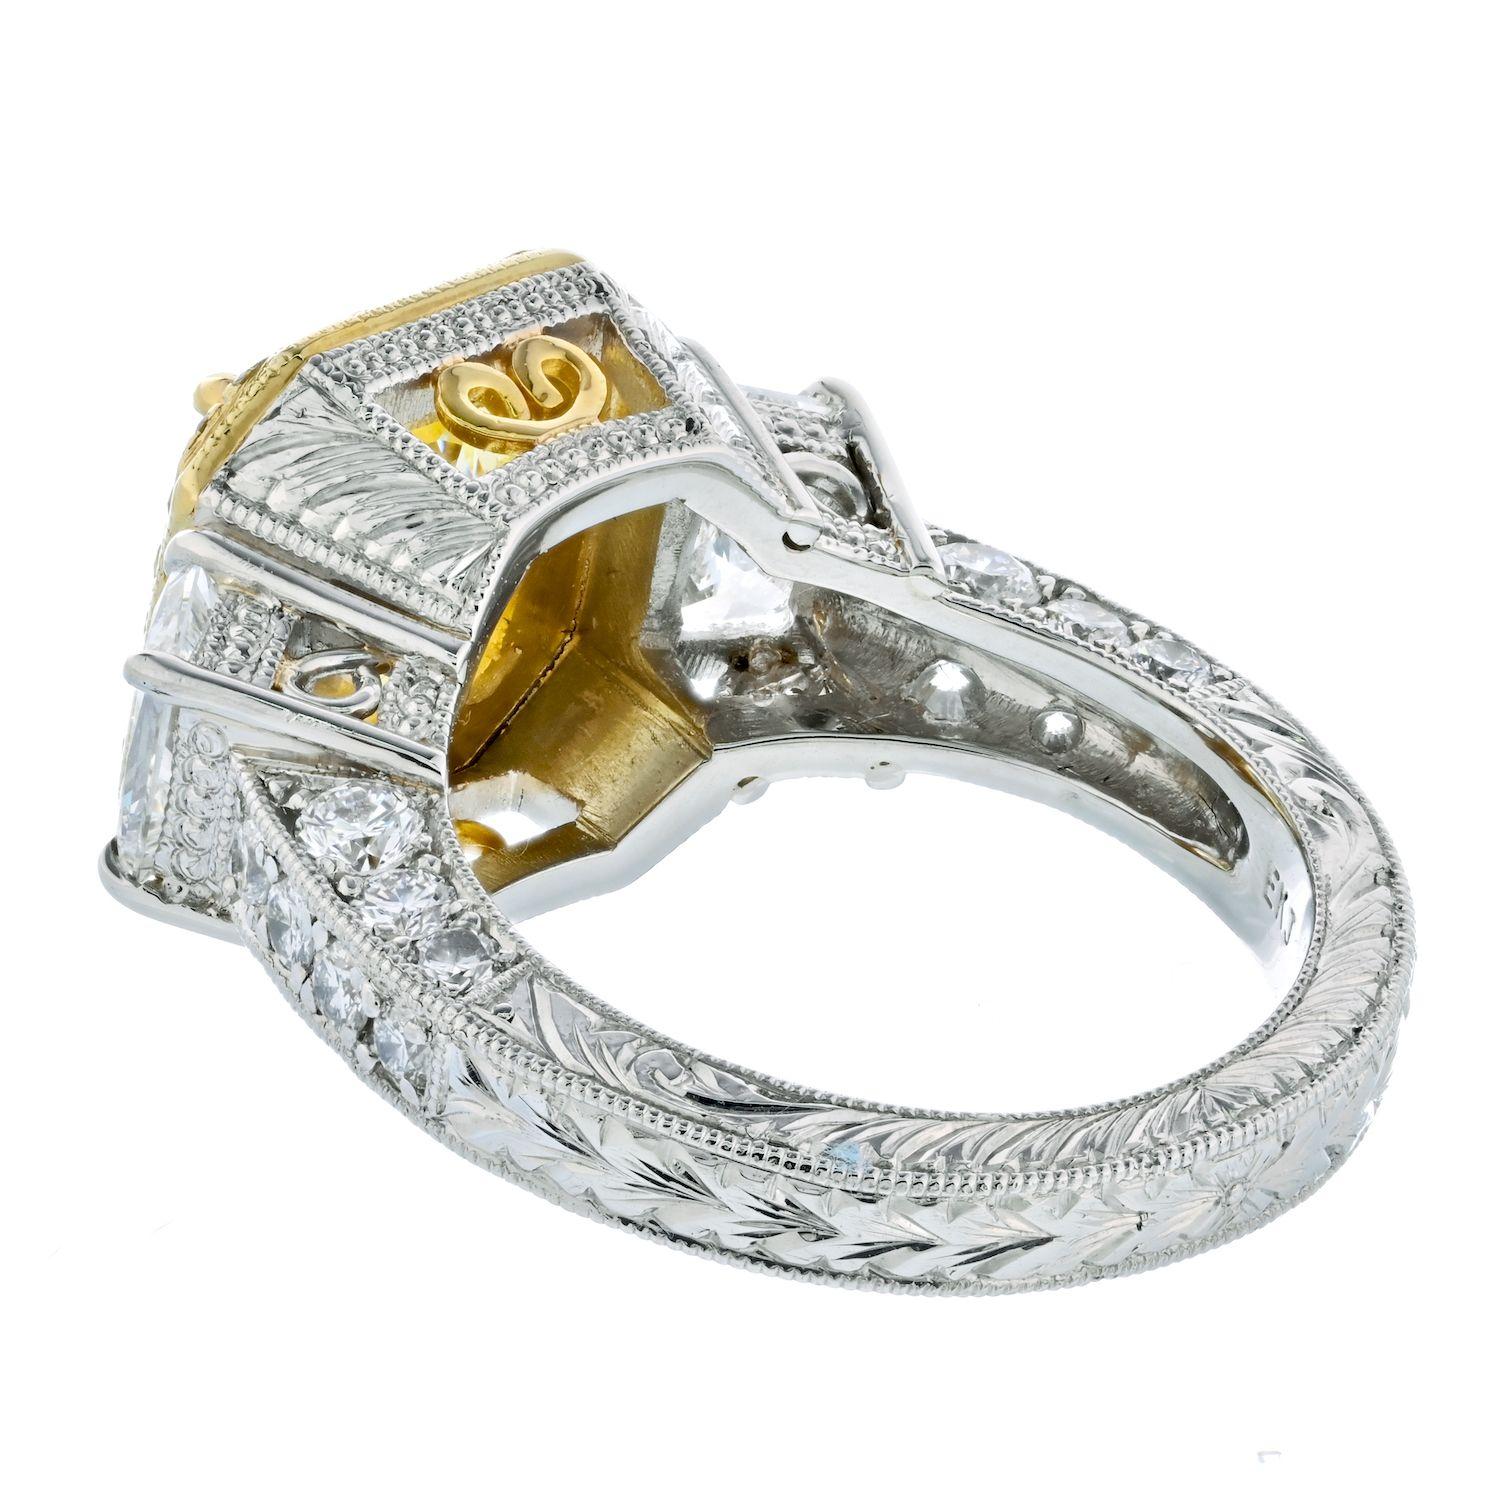 3 ct yellow diamond ring